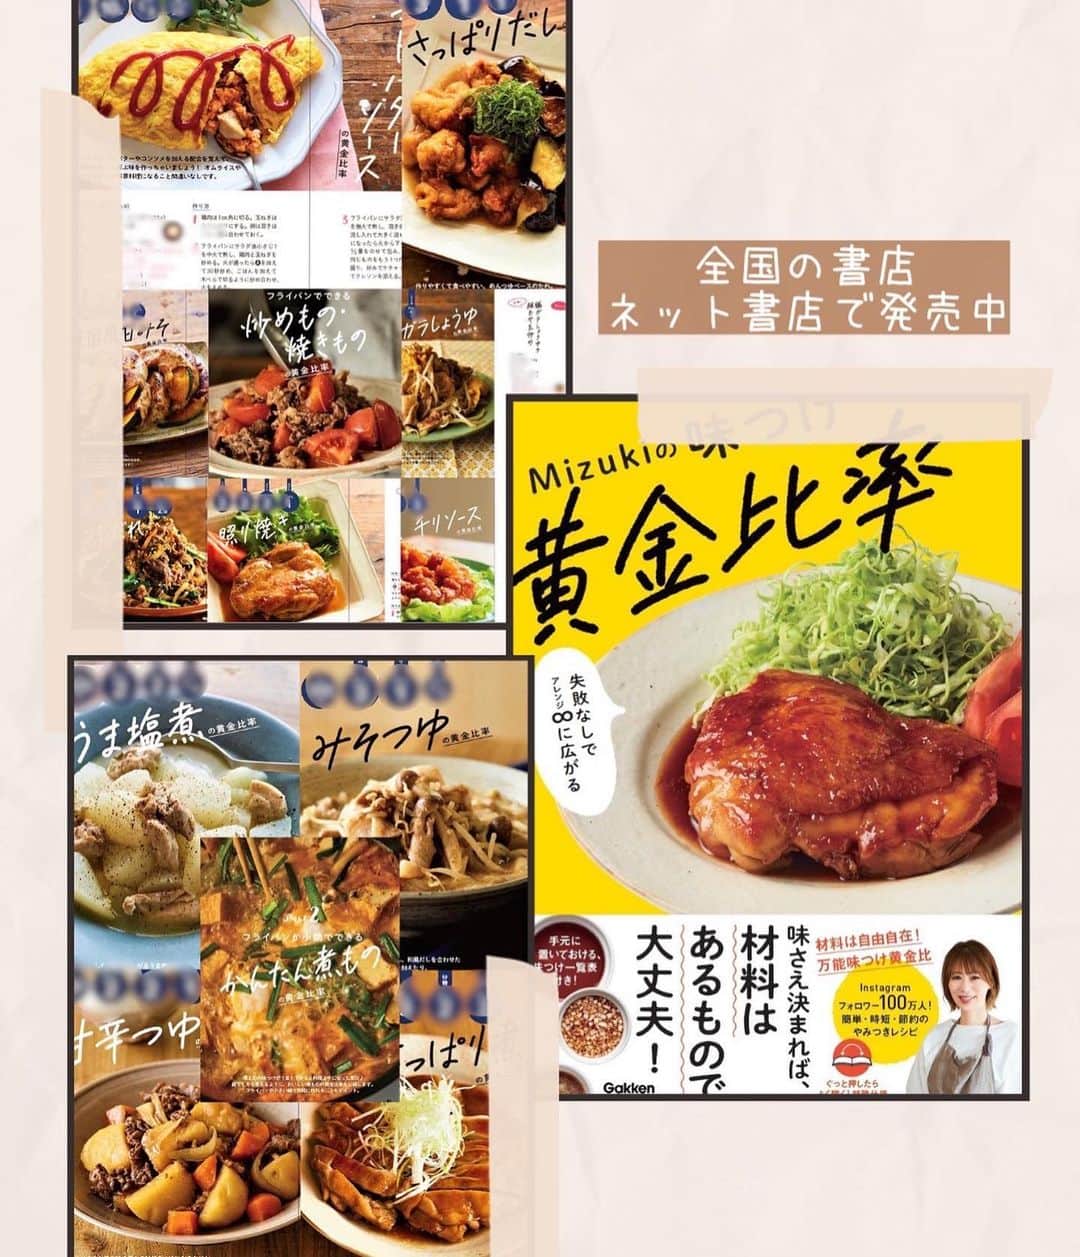 Mizuki【料理ブロガー・簡単レシピ】さんのインスタグラム写真 - (Mizuki【料理ブロガー・簡単レシピ】Instagram)「・自家製冷食にも💕 ⁡ ［#レシピ ］ ーーーーーーーーーーーーーー 中までおいしい焼きおにぎり ーーーーーーーーーーーーーー ⁡ ⁡ ⁡ おはようございます☺️ ⁡ 今日ご紹介させていただくのは \ 中までおいしい焼きおにぎり / (再掲載✨) ⁡ あの焼きおにぎりを自宅で再現❣️ しかも自分で作れば超低コスト👌 調味料を混ぜ込むから 中までおいしく仕上がりますよ〜😋 ⁡ 冷凍保存もできるので よかったらお試し下さいね💕 ⁡ ⁡ ⁡ ⋱⋰ ⋱⋰ ⋱⋰ ⋱⋰ ⋱⋰ ⋱⋰ ⋱⋰ 📍簡単・時短・節約レシピ更新中  Threadsもこちらから▼ @mizuki_31cafe ⁡ 📍謎の暮らし＆変なライブ垢 @mizuki_kurashi ⋱⋰ ⋱⋰ ⋱⋰ ⋱⋰ ⋱⋰ ⋱⋰ ⋱⋰ ⁡ ⁡ ⁡ ＿＿＿＿＿＿＿＿＿＿＿＿＿＿＿＿＿＿＿ 【6個分】 温かいごはん...400g 顆粒和風だし...大1/2 めんつゆ(2倍濃縮)...大1 醤油...小2 みりん・ごま油...各小1 ⁡ 1.ボウルに全ての材料を入れて混ぜ、6等分しておにぎりを作る。 2.アルミホイルに薄く油(分量外)をのばし、1をのせ、トースターで片面6〜7分ずつ焼く。 ￣￣￣￣￣￣￣￣￣￣￣￣￣￣￣￣￣￣￣ ⁡ ⁡ 《ポイント》 ♦︎アルミホイルに油を塗るとくっつきにくくなります♩まずヘラで底を剥がしてから裏返してください♩ ♦︎焼き時間は目安です☆好みの焼き色が付くまで焼いてください♩ ♦︎好みで(途中で)表面に醤油を塗っても◎香ばしさがアップします♩ ♦︎ひとつずつラップで包んで冷凍も◎ ♦︎めんつゆが3倍濃縮の場合は2/3量、4倍濃縮の場合は1/2量にしてください♩ ⁡ ⁡ ⁡ ⁡ ⁡ 💬💬💬 (いつできるかわからない) 本の撮影がはじまりました🌸 しばらくの間 投稿したり、できなかったり お返事できないこともあると思いますが よろしくお願いいたします🙇‍♀️✨ ⁡ ⁡ ⁡ ⁡ ⁡ ⁡ ⋱⋰ ⋱⋰ ⋱⋰ ⋱⋰ ⋱⋰ ⋱⋰ ⋱⋰  愛用している調理器具・器など   #楽天ROOMに載せてます ‎𐩢𐩺  (ハイライトから飛べます🕊️) ⋱⋰ ⋱⋰ ⋱⋰ ⋱⋰ ⋱⋰ ⋱⋰ ⋱⋰ ⁡ ⁡ ⁡ ⁡ ⁡ ✼••┈┈┈┈┈••✼••┈┈┈┈┈••✼ 今日のごはんこれに決まり！ ‎𓊆#Mizukiのレシピノート 500品𓊇 ✼••┈┈┈┈┈••✼••┈┈┈┈┈••✼ ⁡ ˗ˏˋ おかげさまで25万部突破 ˎˊ˗ 料理レシピ本大賞準大賞を受賞しました✨ ⁡ 6000点の中からレシピを厳選し まさかの【500レシピ掲載】 肉や魚のメインおかずはもちろん 副菜、丼、麺、スープ、お菓子 ハレの日のレシピ、鍋のレシピまで 全てこの一冊で完結 𓌉◯𓇋 (全国の書店・ネット書店で発売中) ⁡ ⁡ ⁡ ⁡ ⁡ #onigiriaction  #焼きおにぎりm #焼きおにぎり #おにぎり #作り置き #節約料理  #簡単料理  #時短料理 #mizukiレシピ  #時短レシピ #節約レシピ #簡単レシピ」10月5日 6時22分 - mizuki_31cafe